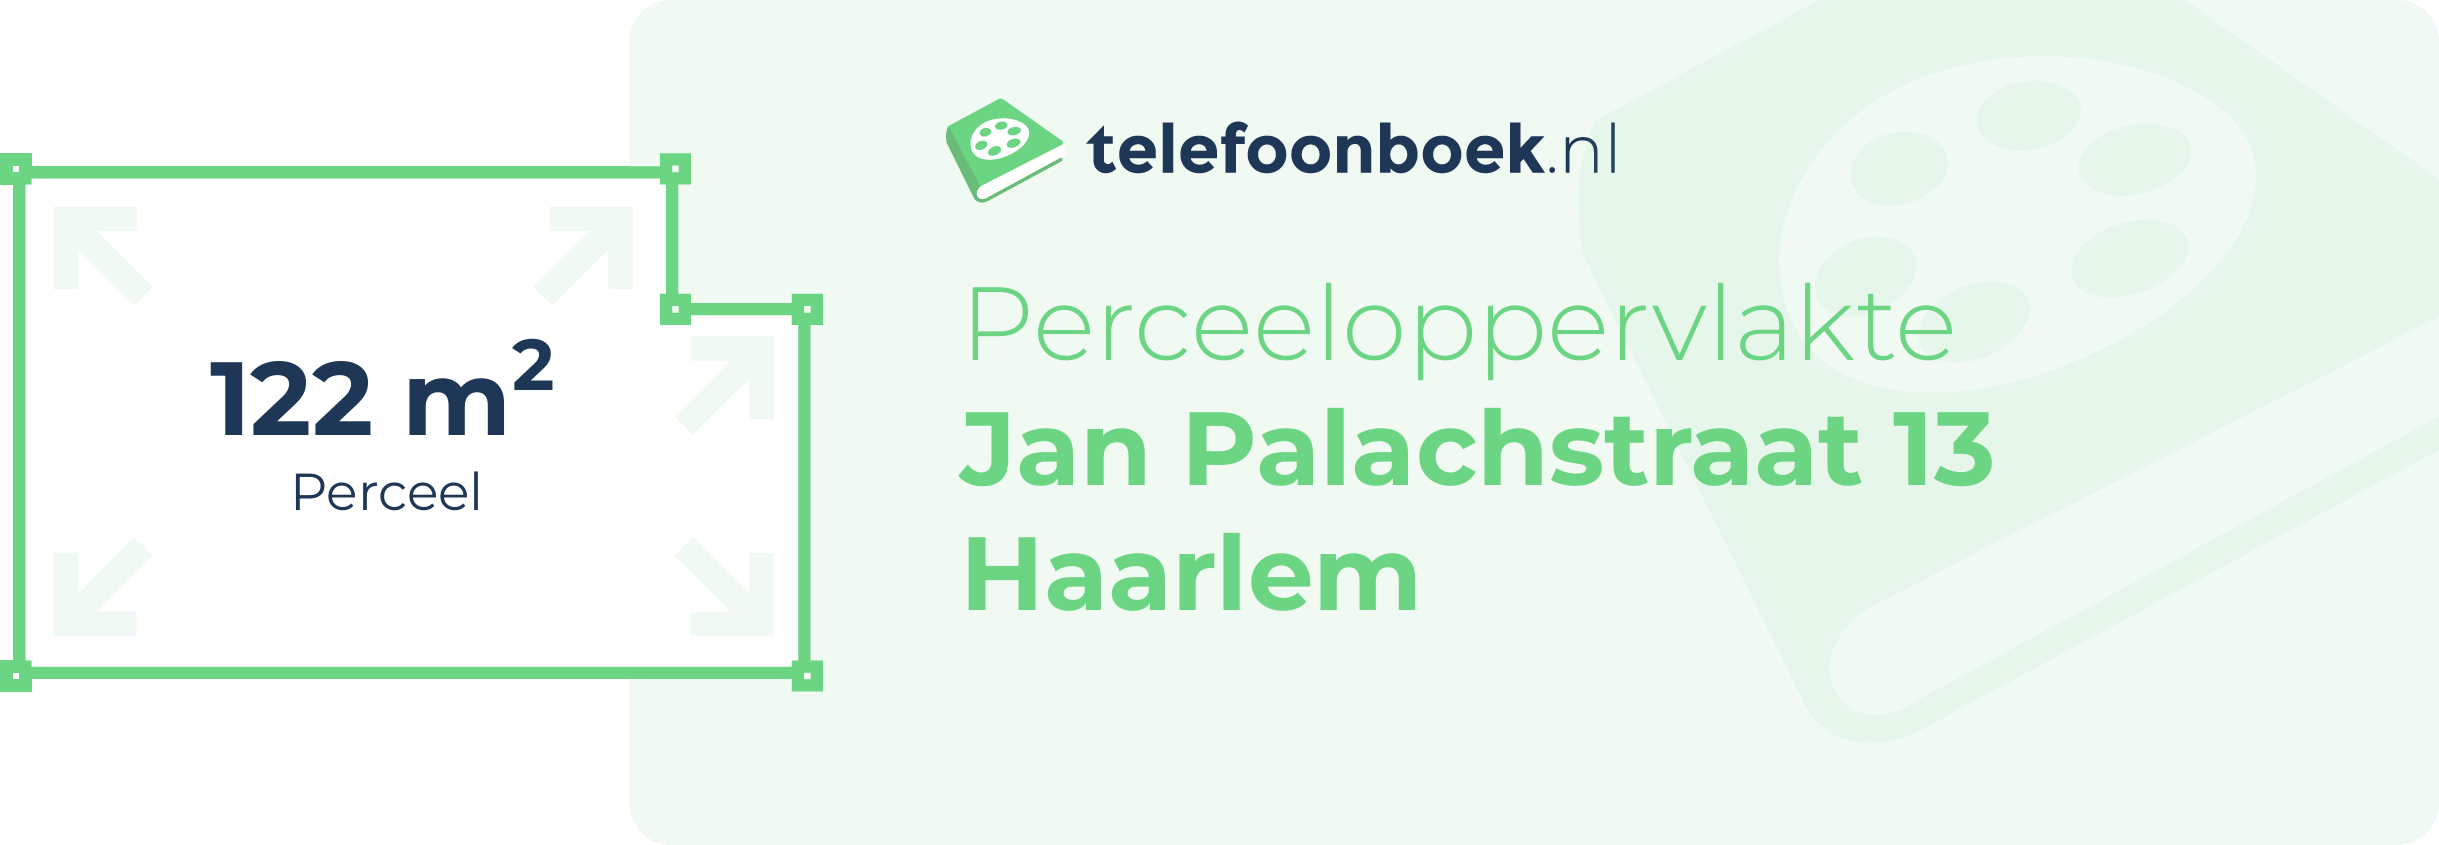 Perceeloppervlakte Jan Palachstraat 13 Haarlem